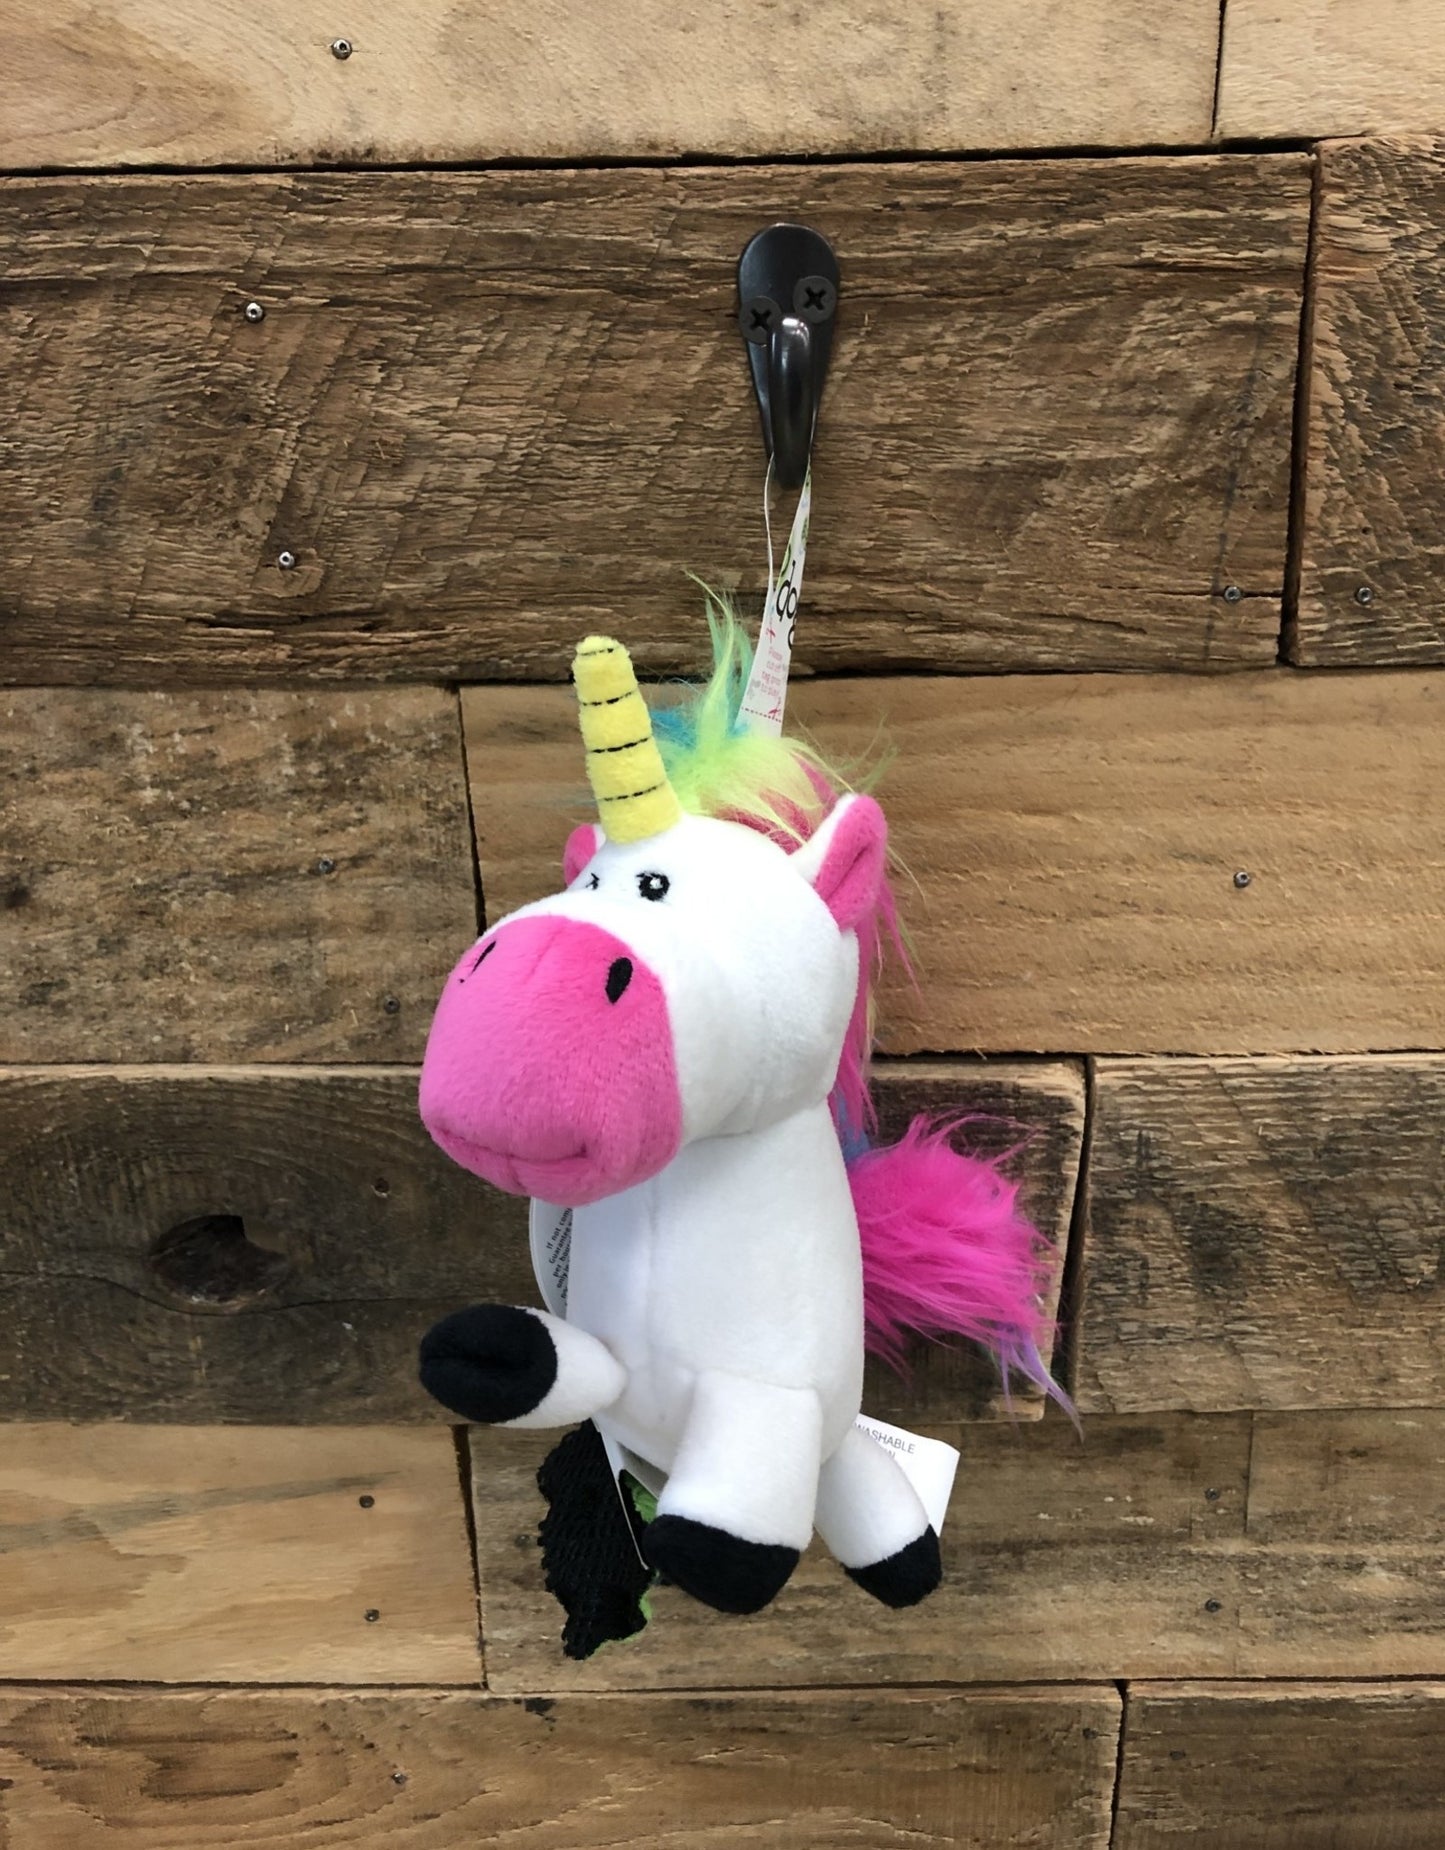 goDog Unicorn Plush Dog Toy -